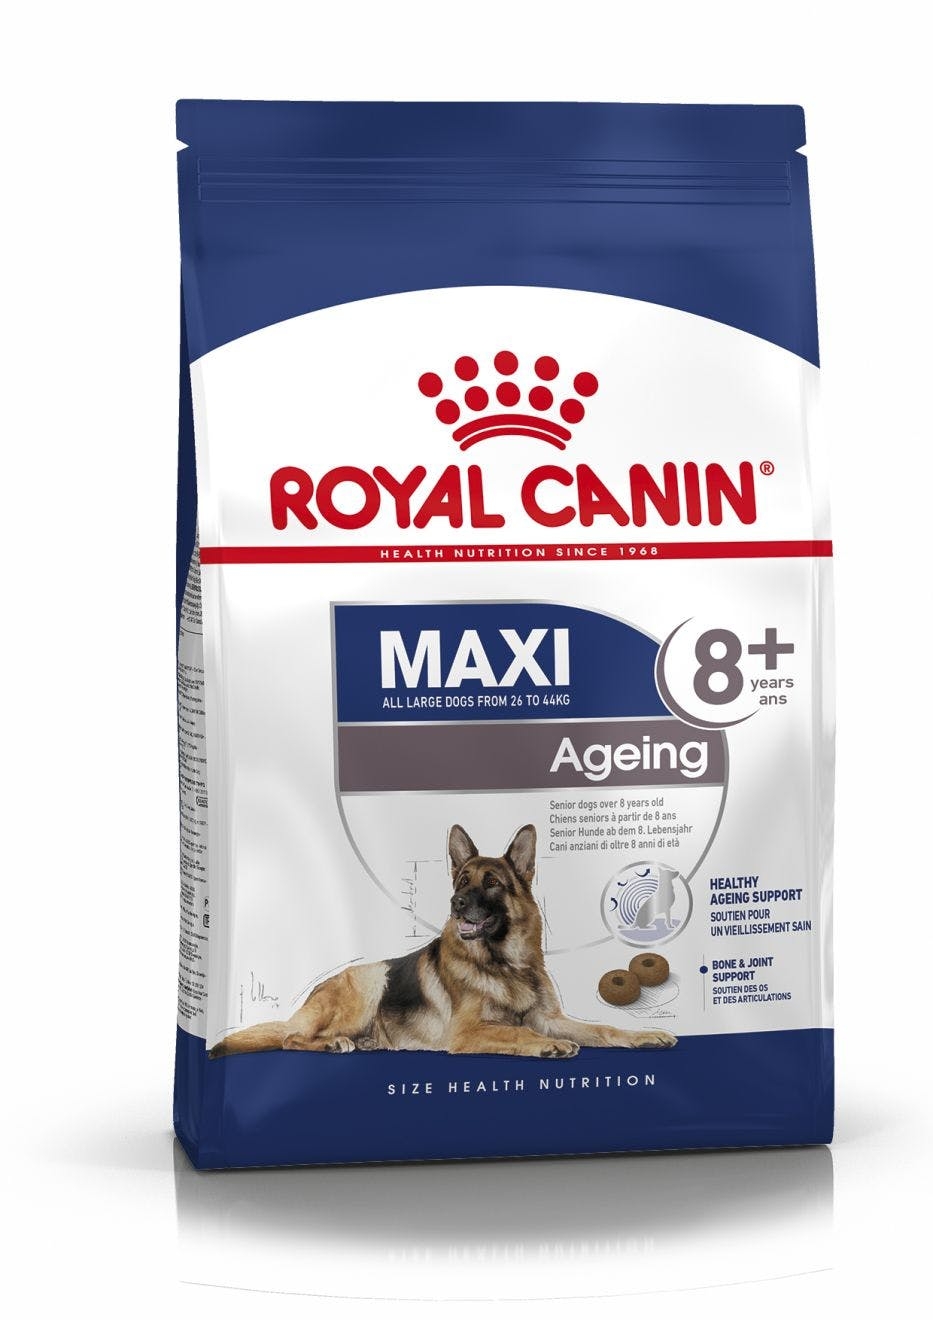 Se Royal Canin Maxi Ageing 8+. Hunde over 8 år. 26-44kg. (15kg.) hos Alttilhundogkat.dk